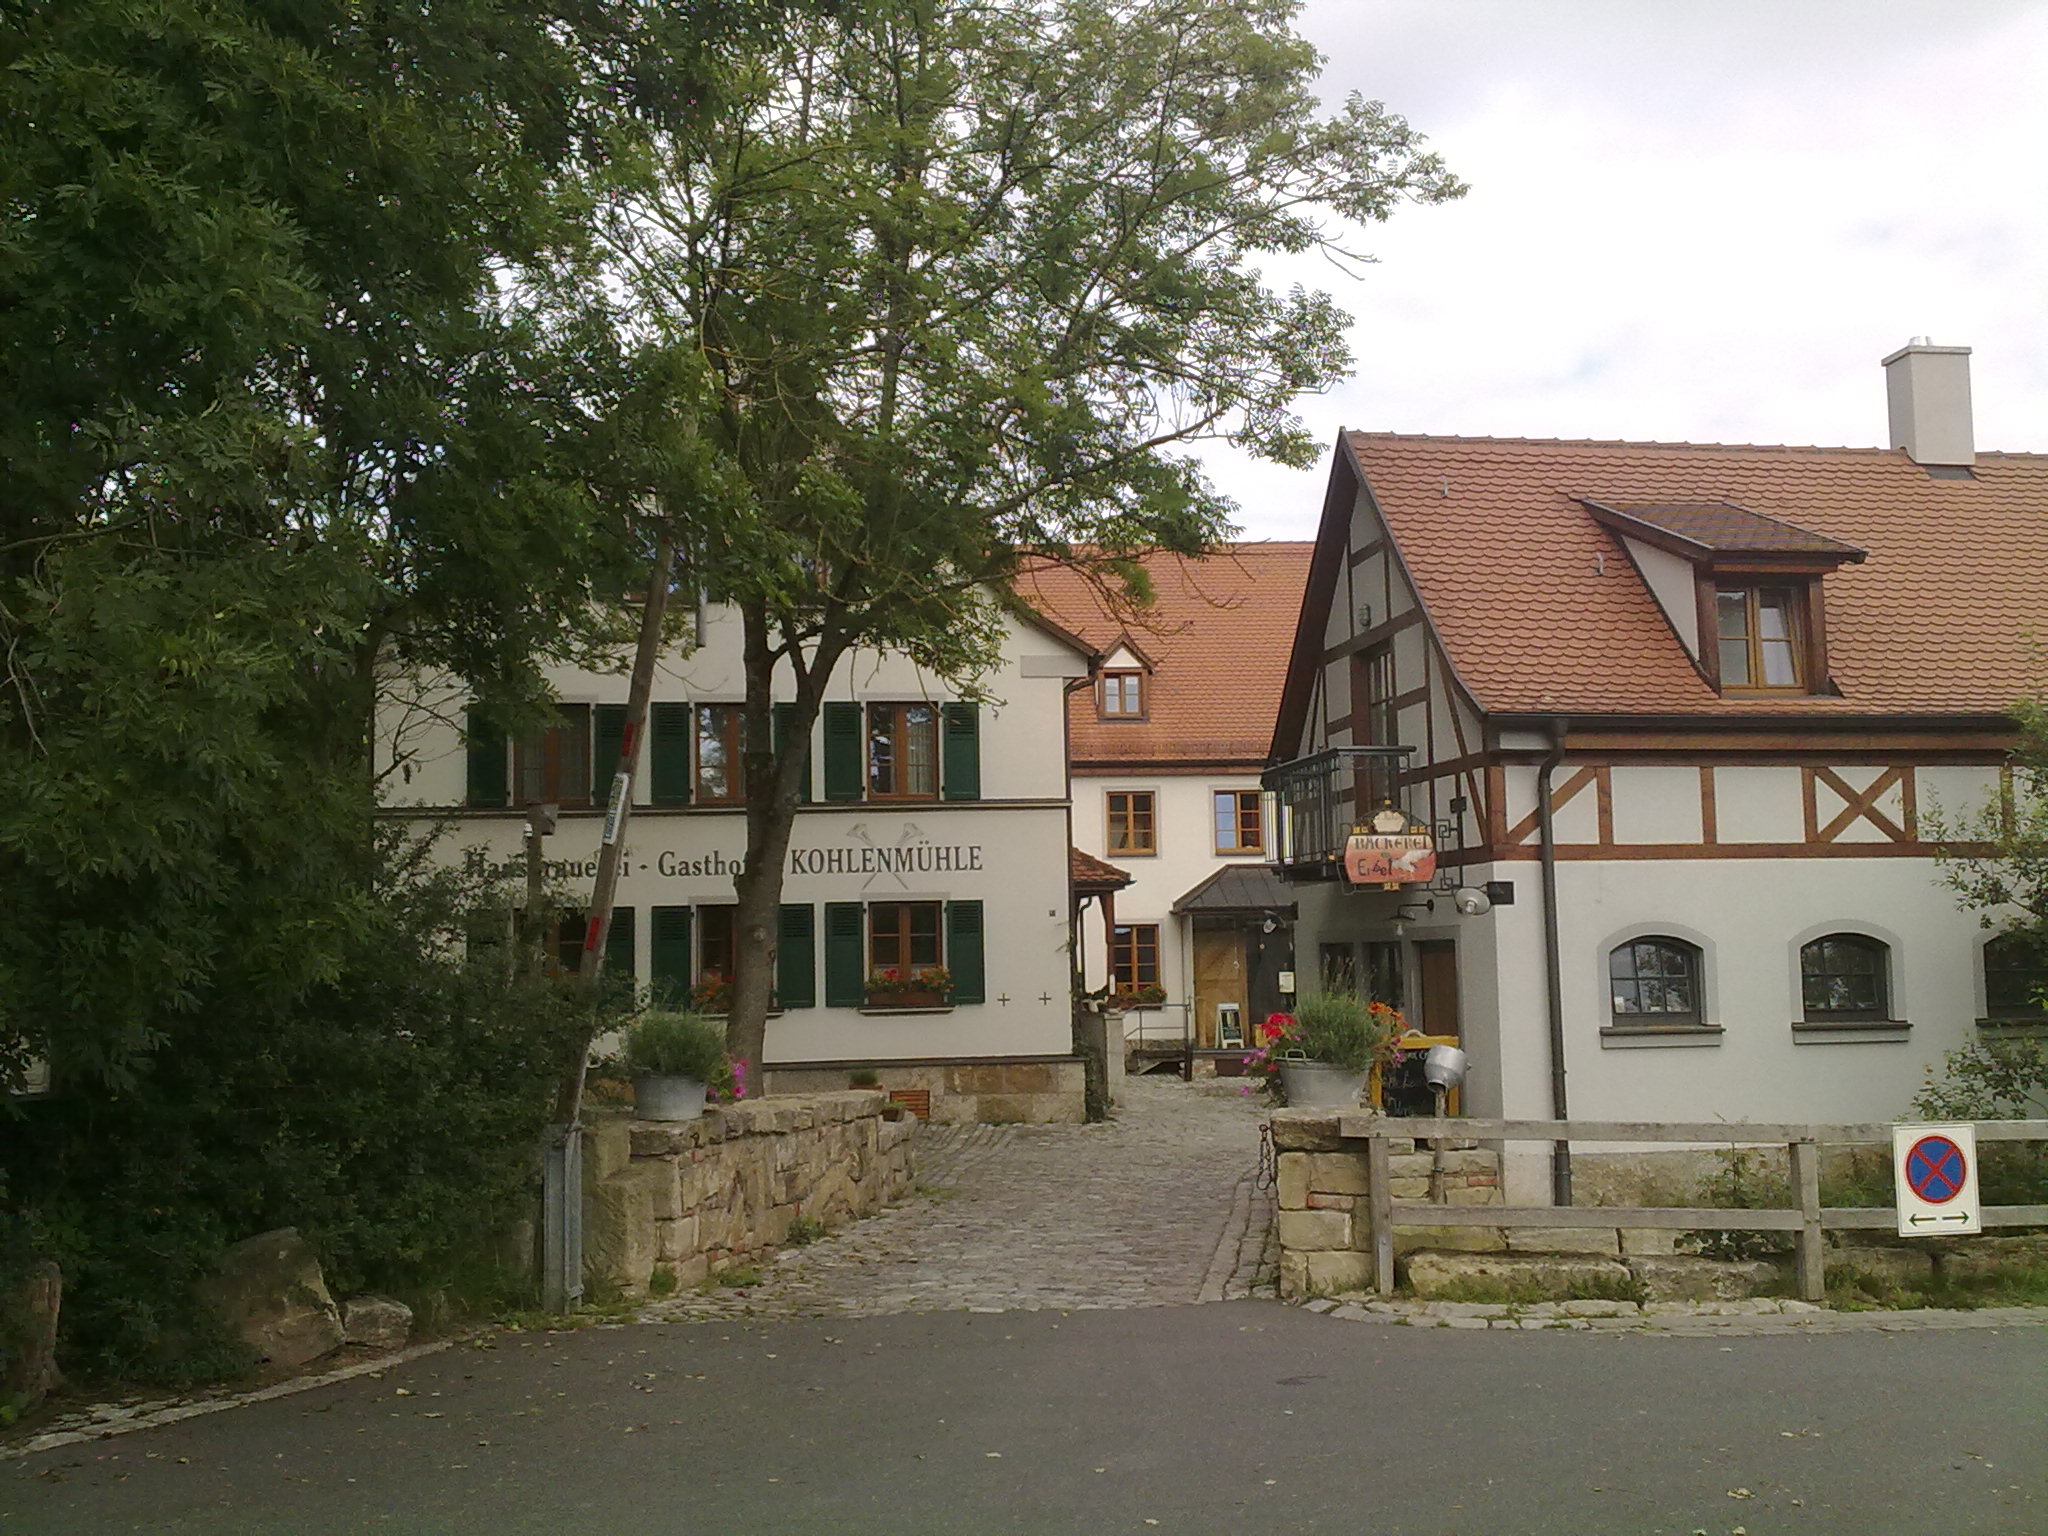 Kohlenmühle Brauerei &amp; Gasthof - Erlebnis in rustikalem Ambiente